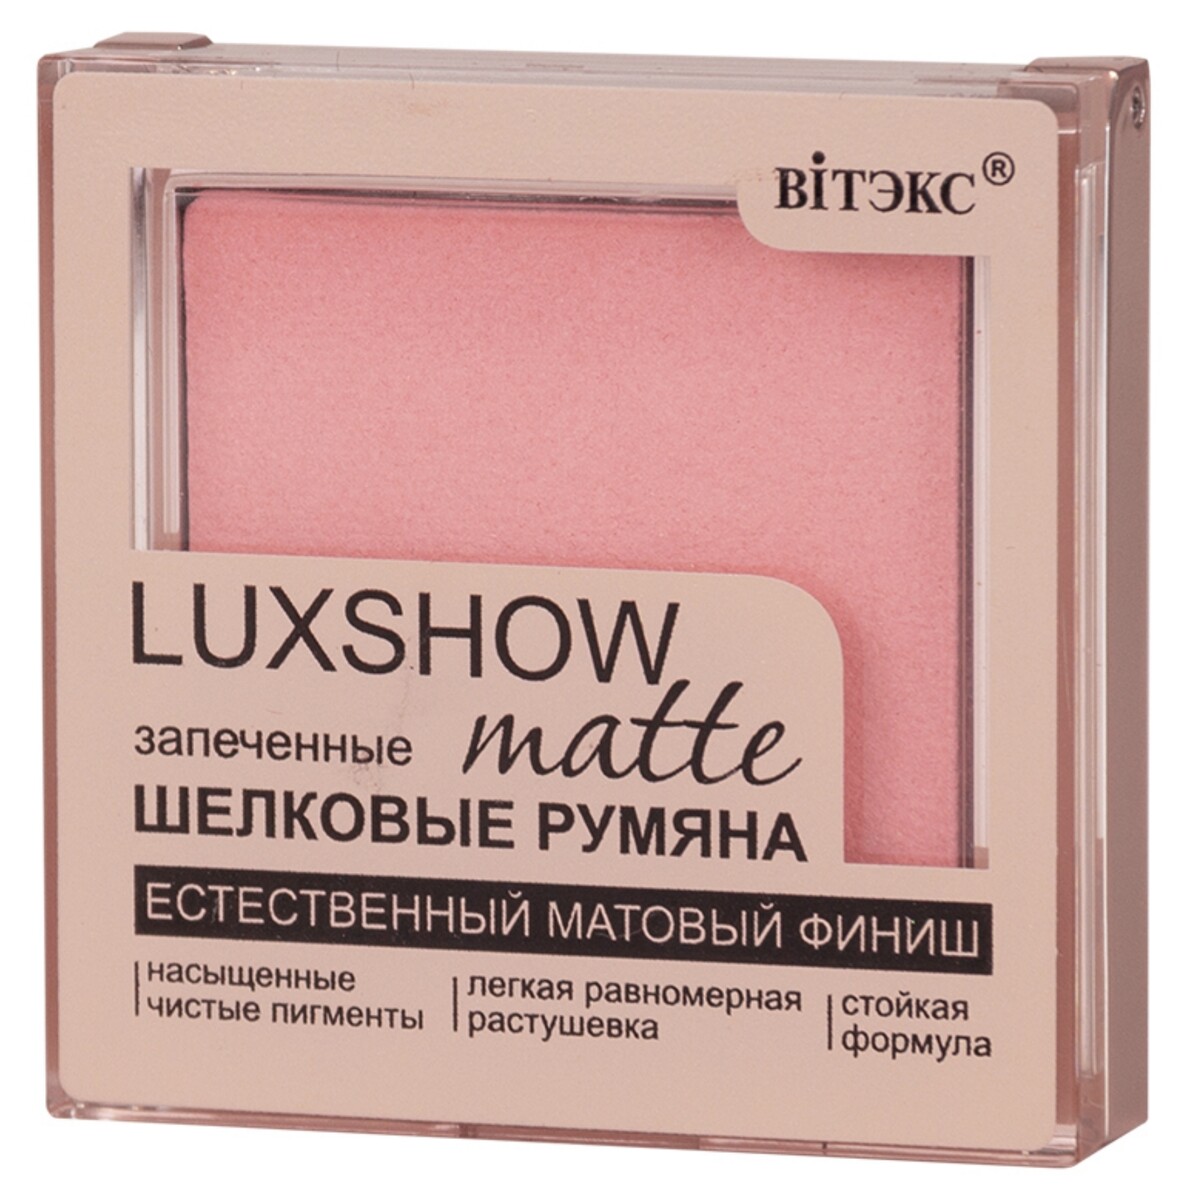 Vitex румяна матовые запеченные luxshow, тон 03, розовый 4,5 г Витекс